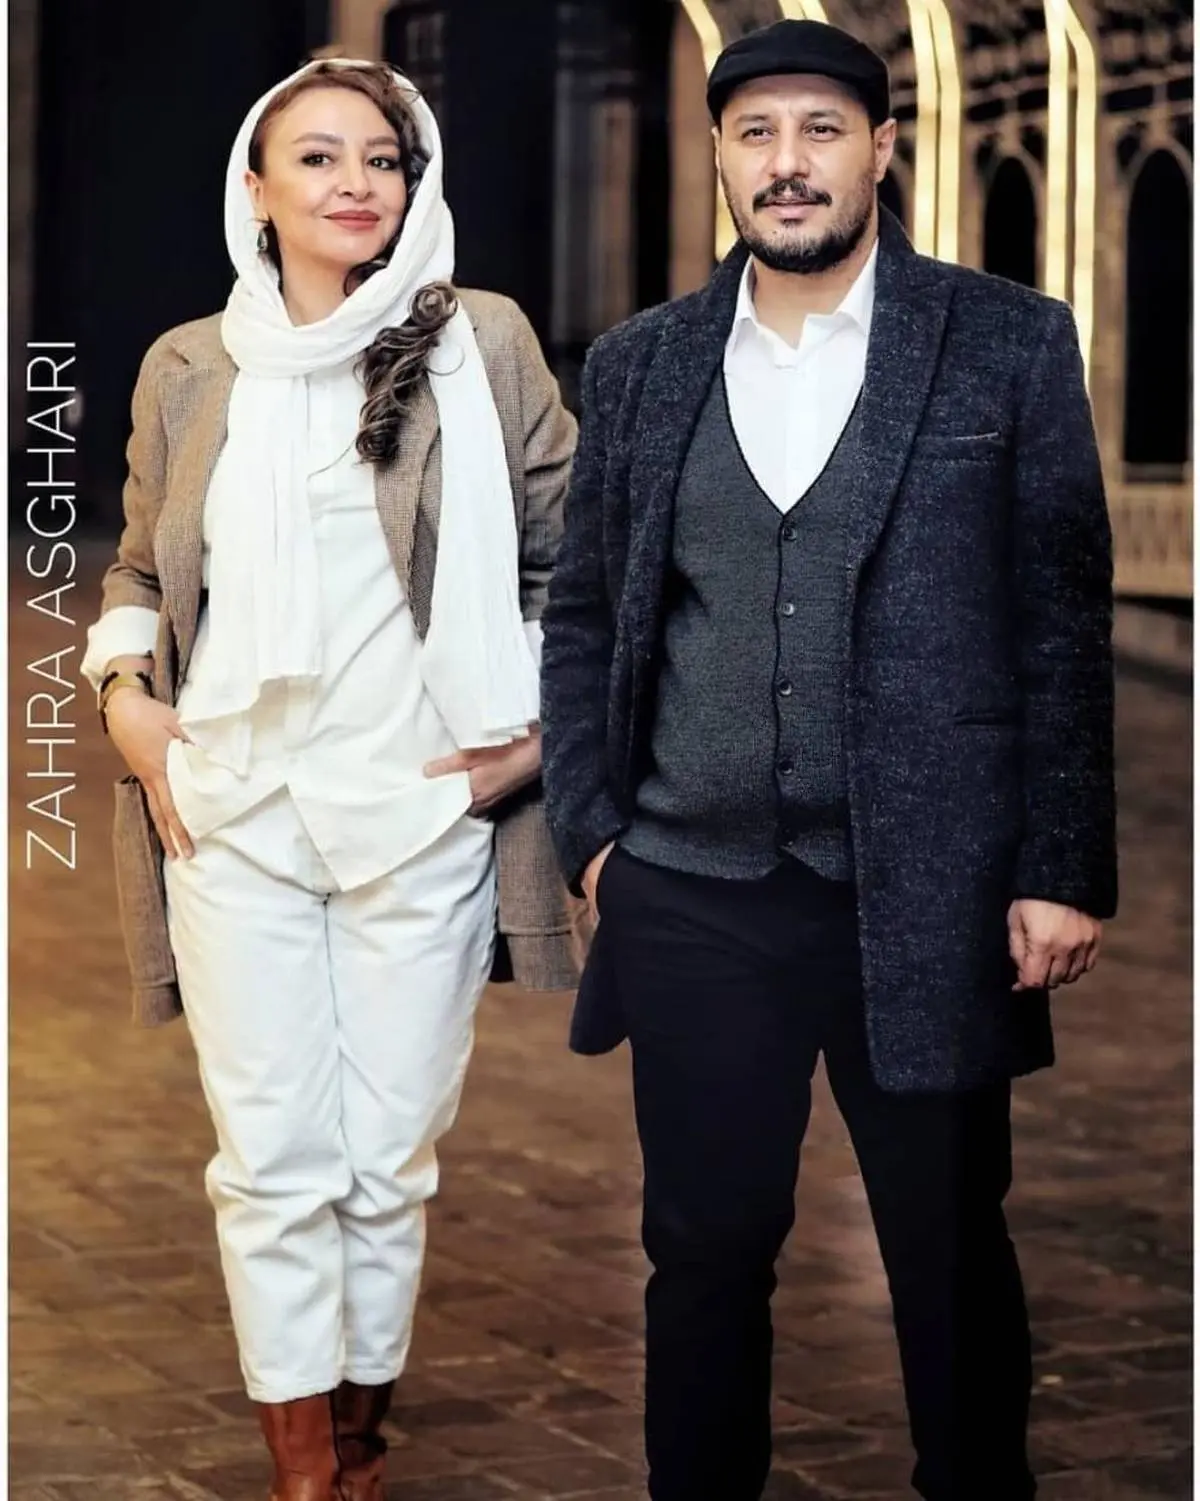 شوخی جواد عزتی با ماسکش در جشنواره فجر | لباس مردانه جواد عزتی در جشنواره فجر